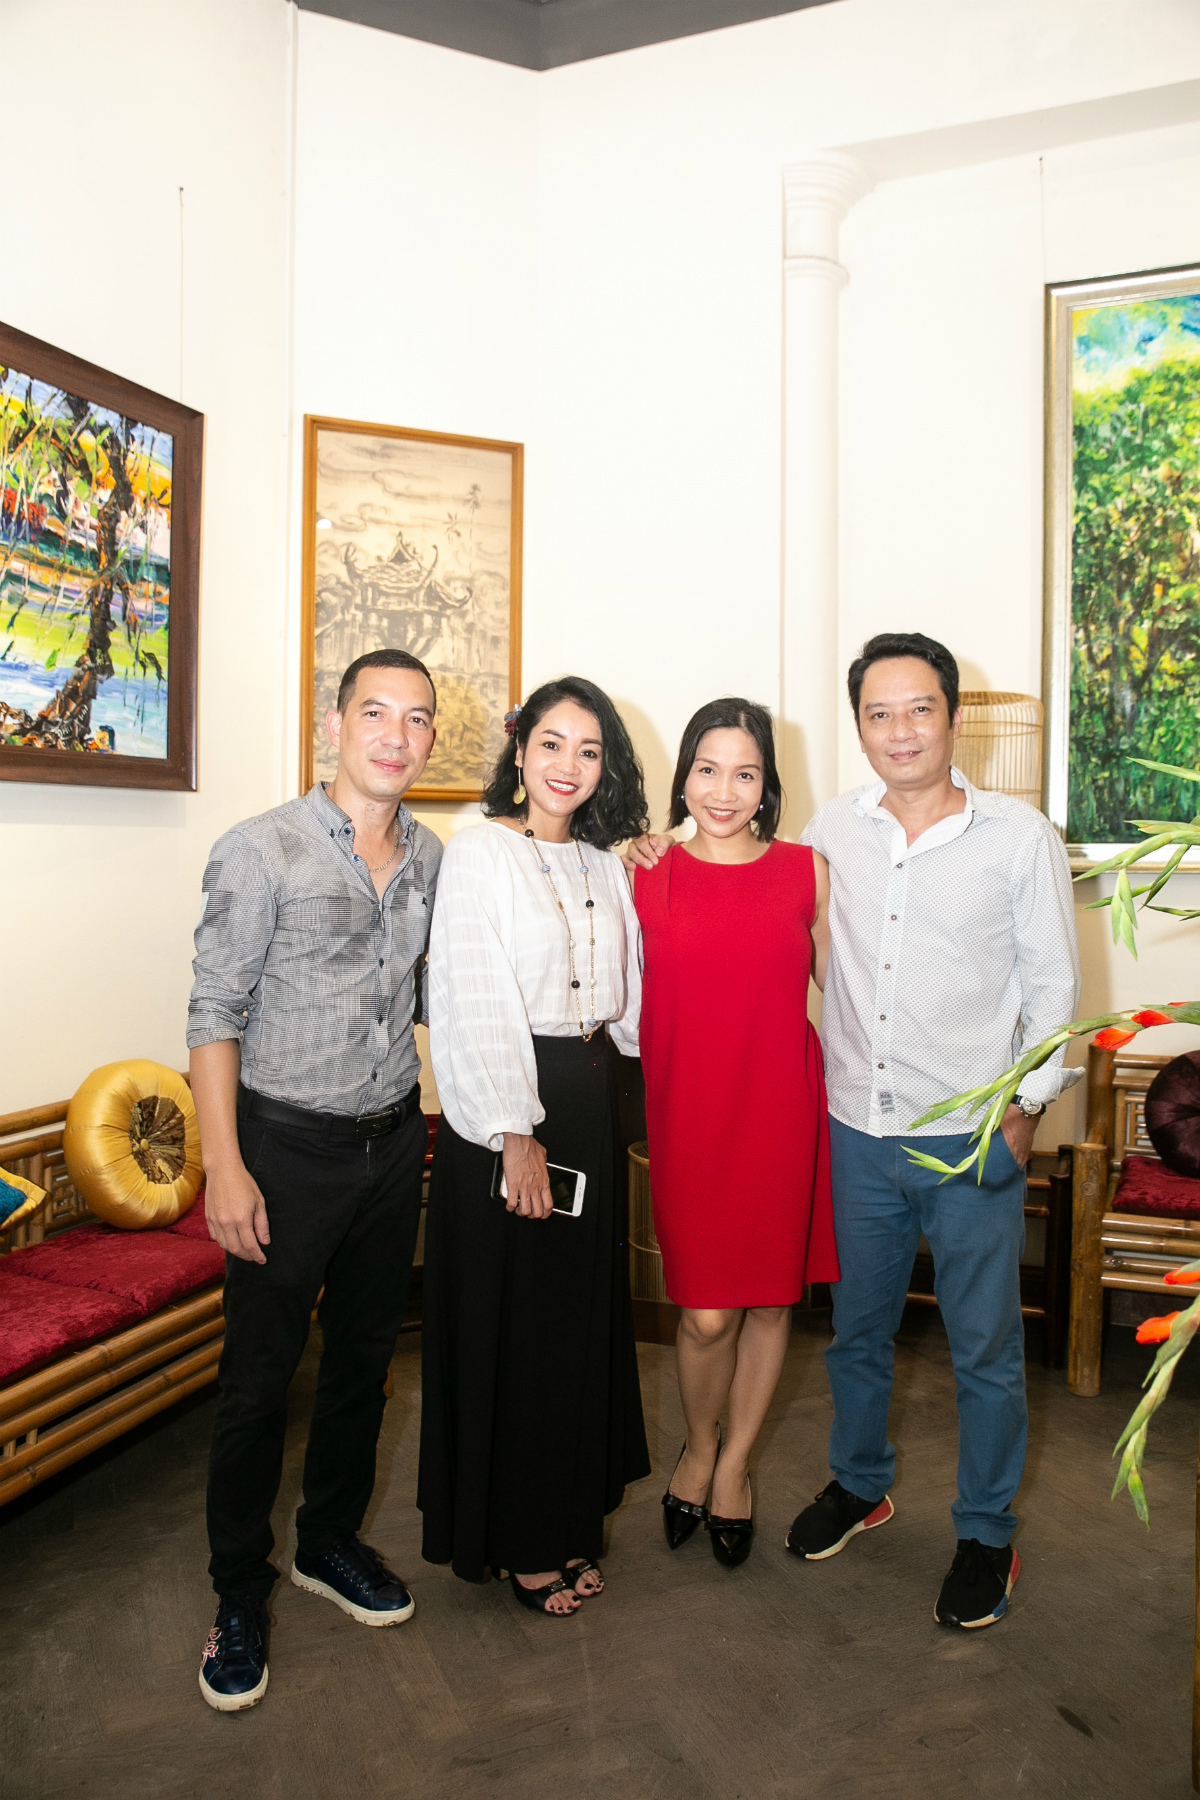 Vợ chồng ca sĩ Mỹ Linh - Anh Quân cũng tới chúc mừng nhạc sĩ Quốc Bình khai trương không gian văn hóa ẩm thực có vị trí đắc địa ngay ở phố Tràng Tiền, Hà Nội